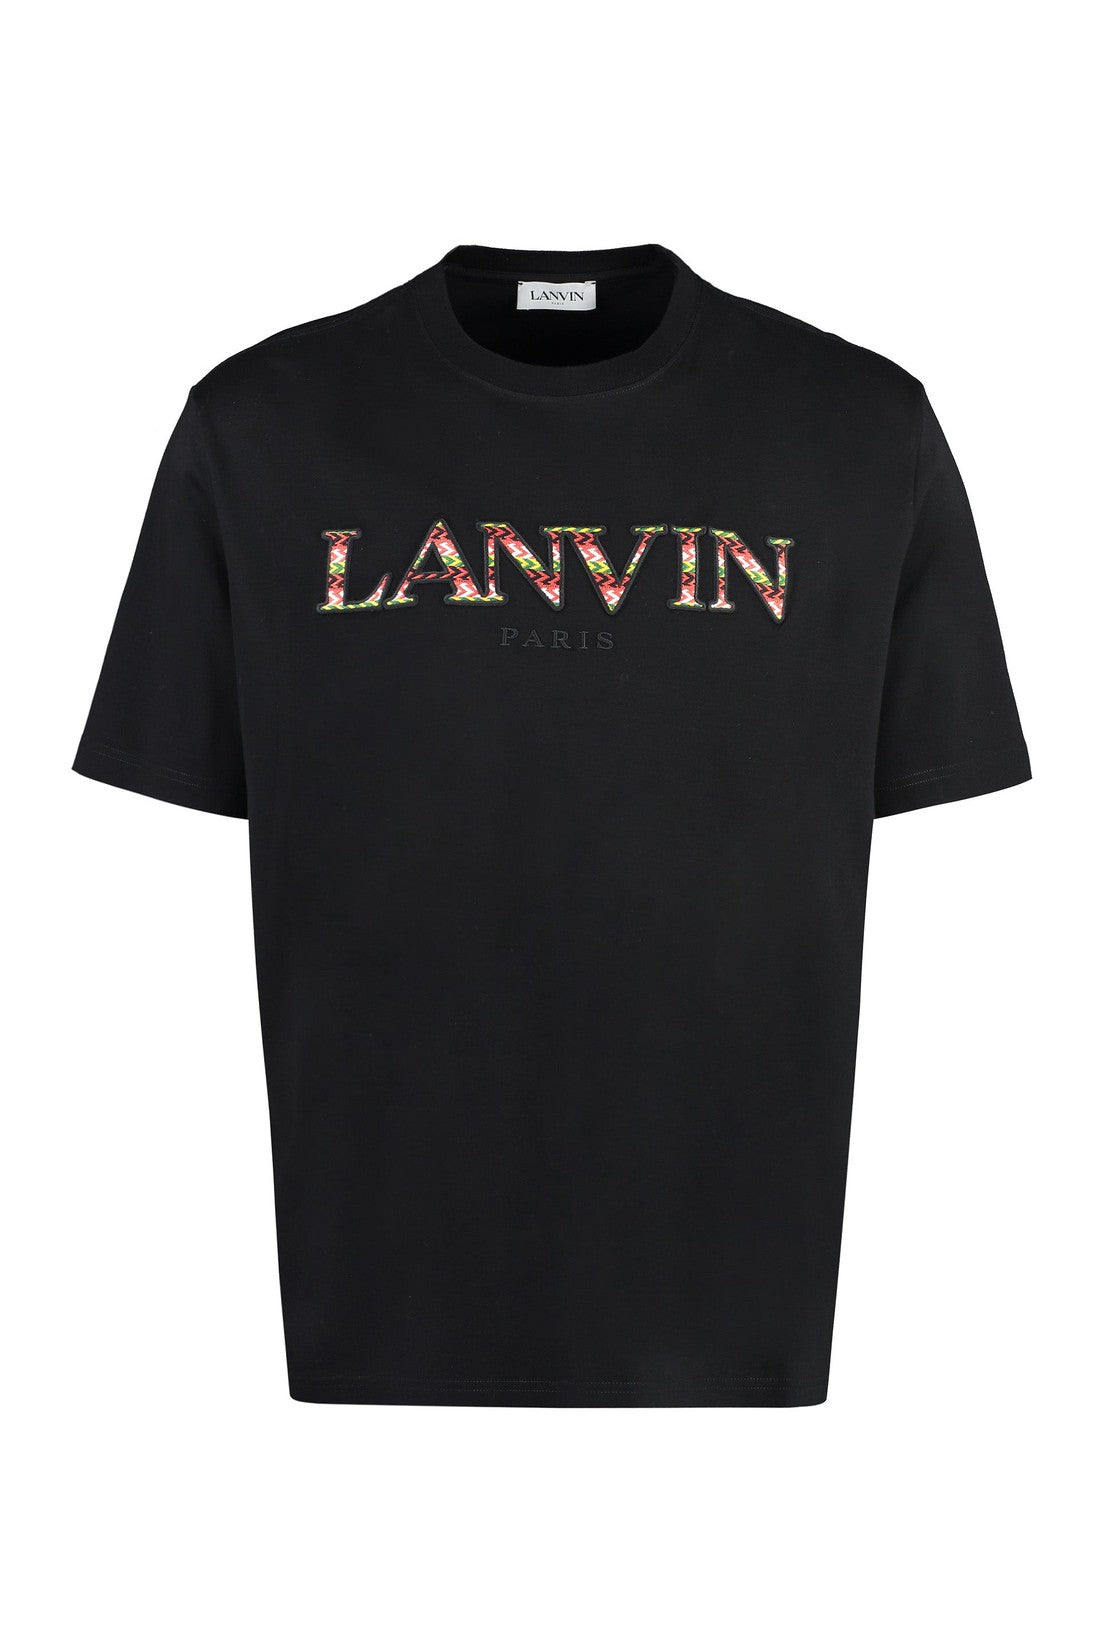 Lanvin-OUTLET-SALE-Cotton crew-neck T-shirt-ARCHIVIST